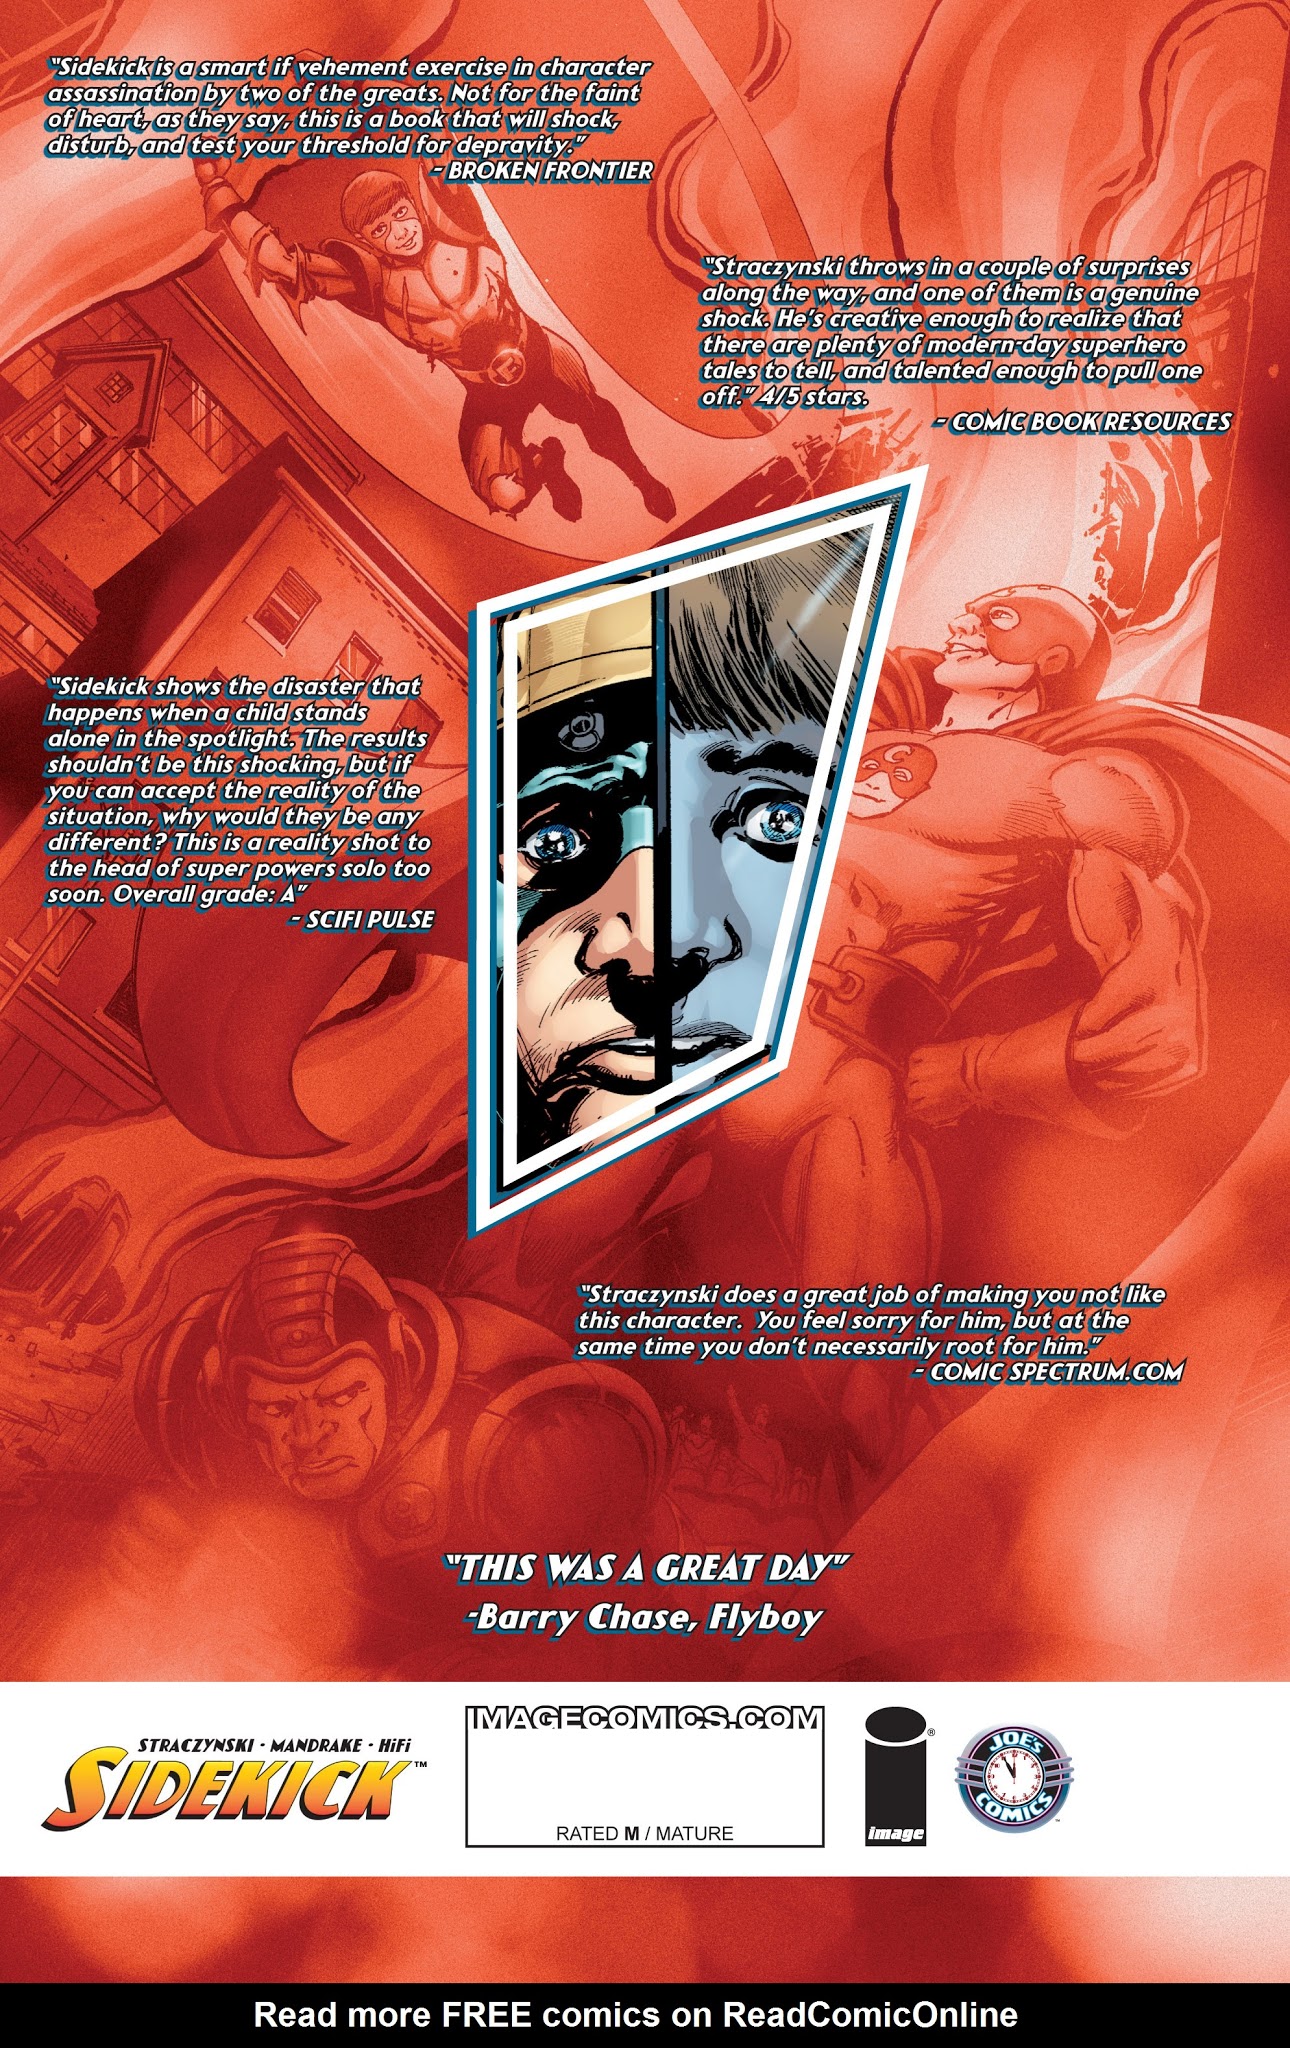 Read online Sidekick comic -  Issue #2 - 32